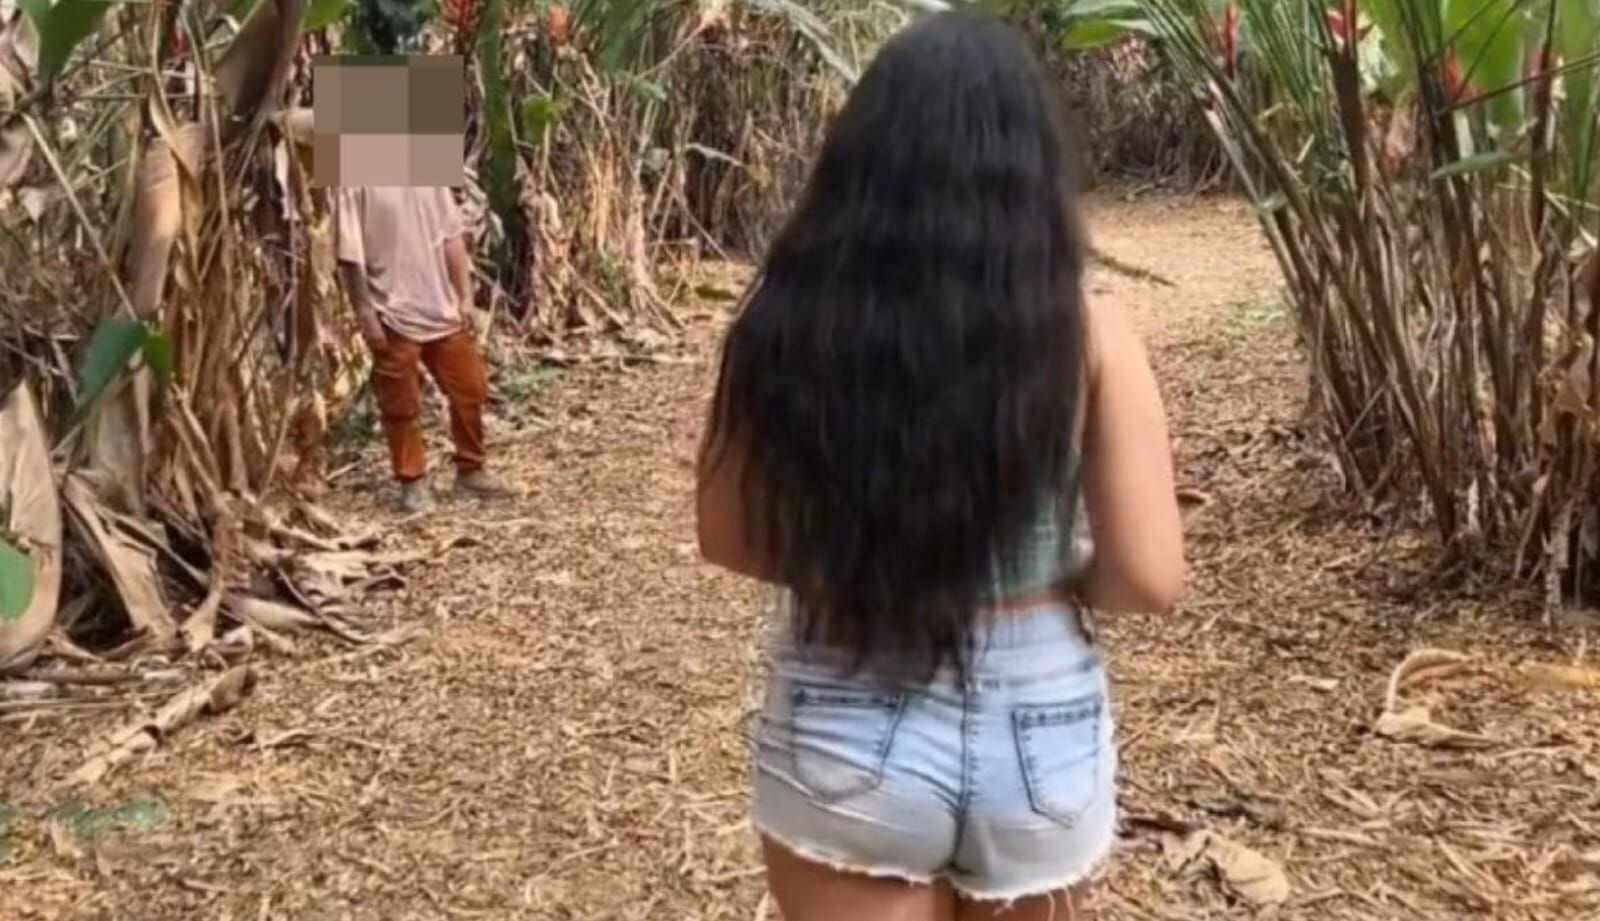 grabaron video porno en parque la flora de bucaramanga: alcalde pide acciones